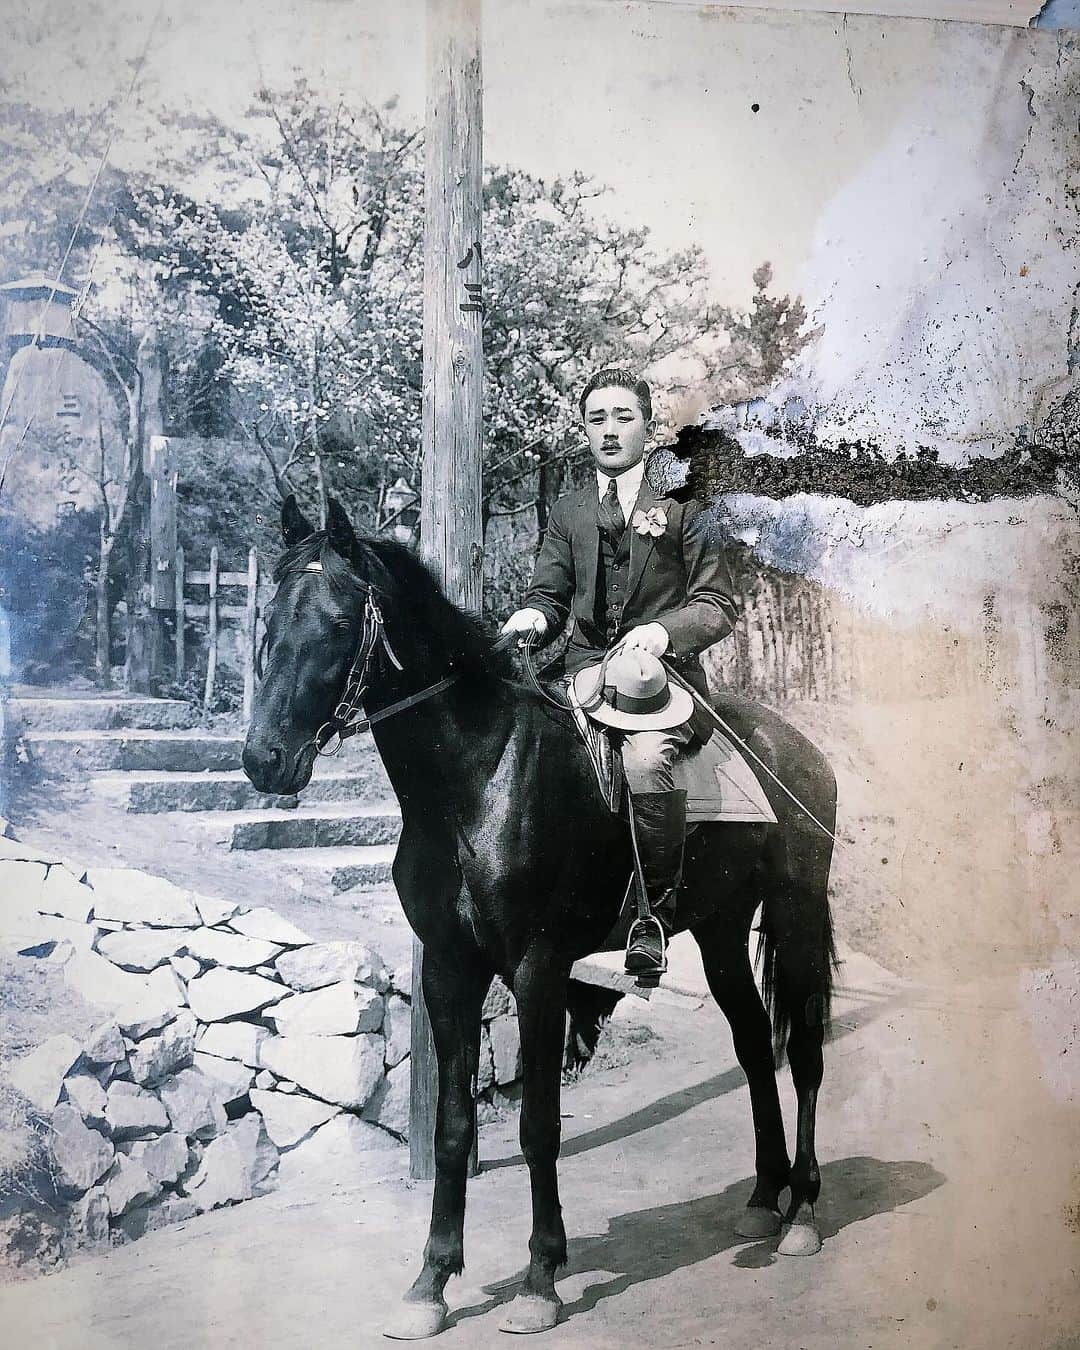 白澤貴子のインスタグラム：「Finally my cousin found the photos of my great-grand father with his horse.  乗馬を始めた理由をよく聞かれるのですが、実は２つあり、最初のきっかけは曽祖父。  競馬馬と乗馬馬を共に所有していた彼が凛とした姿で騎乗している写真を物心ついた頃から何度も眺めているうち、いつしか馬に乗ることが夢に。  母を説得してクラブに行ってみたものの、まだ120cmほどの背丈だった私には想像以上に馬の顔が大きく、怖くなって断念することとなるのですが🤭  大人になって乗馬にきちんと取り組み始めてからもう一度曽祖父の写真を見たくなり探してみたら、あれだけたくさんあったはずの写真がまったく見つからず…。  親戚にもお願いして大捜索していたところ、遂に見つけた！と先週従姉妹から連絡が…  あの頃によく見ていた写真ではなかったものの、自分のルーツを目視で再確認できて嬉しい。  ひいおじいちゃん、私を馬の世界に導いてくれてありがとう！  #_tahco_et_cheval」